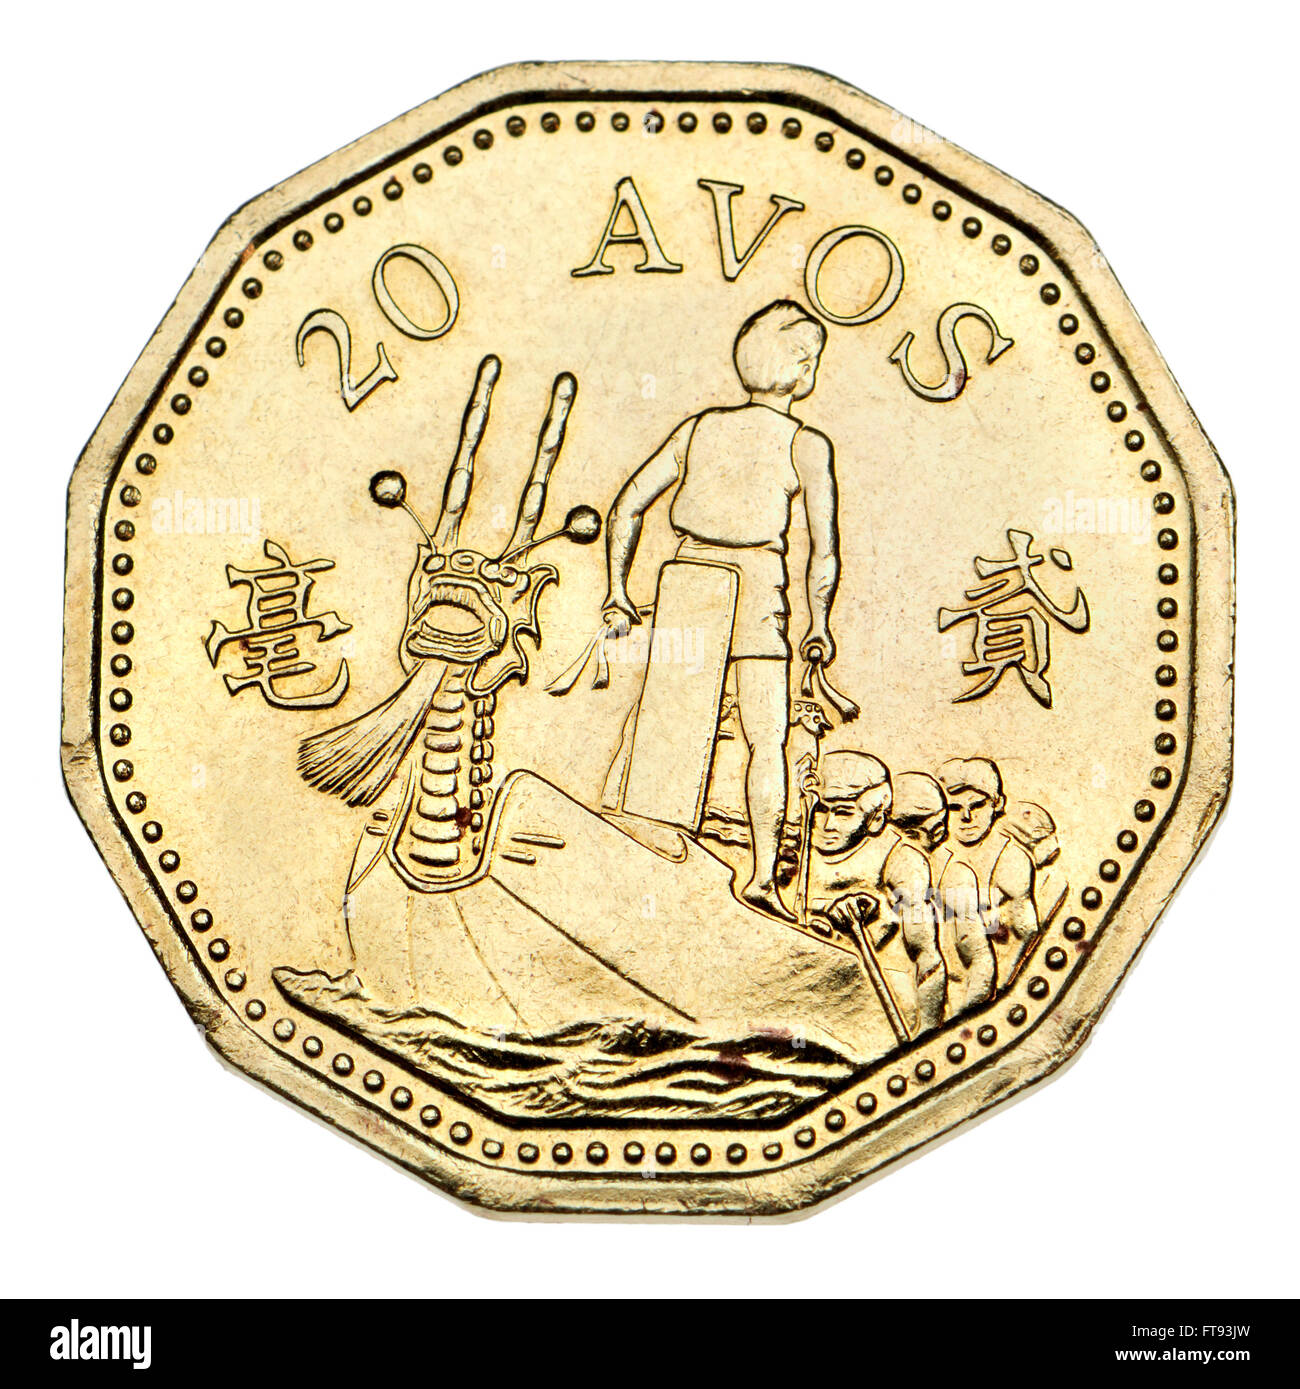 Münze von Macau: 20 Avos, 1993 zeigt ein Drachenboot auf der Rückseite. Messing Stockfoto